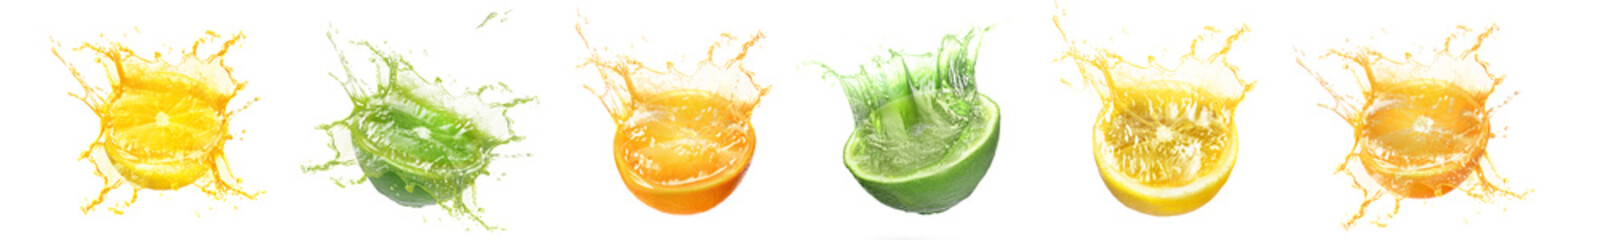 Fresh citrus fruits with splashing juice on white background, set